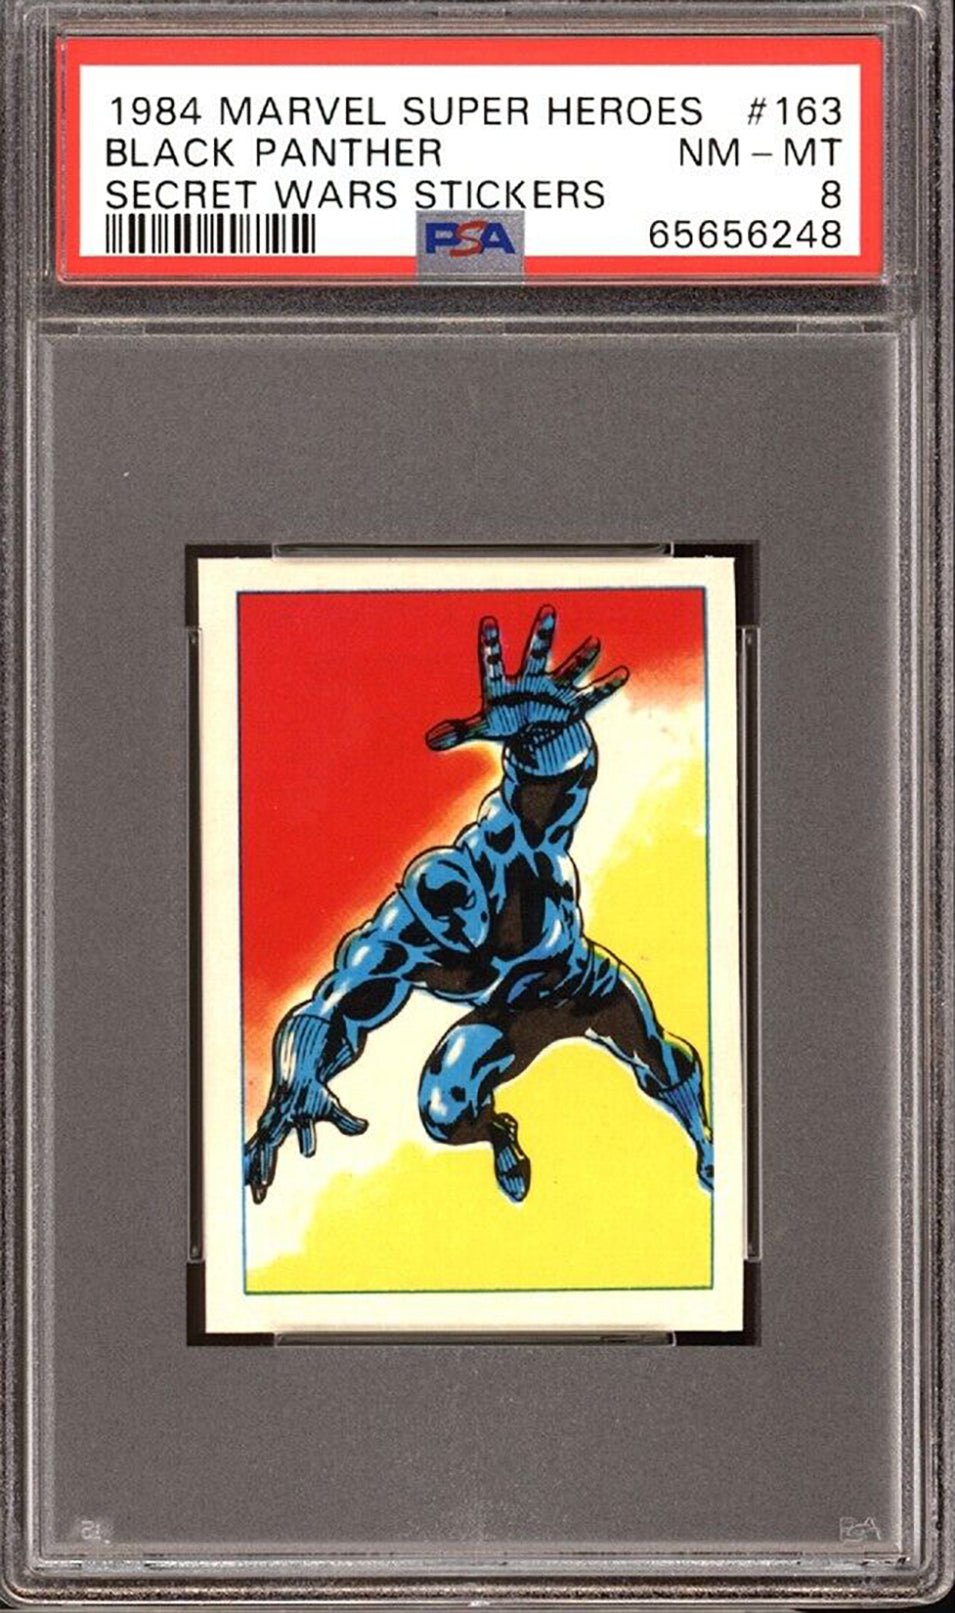 BLACK PANTHER PSA 8 1984 Marvel Super Heroes Secret Wars Sticker #163 C2 Marvel Graded Cards Sticker - Hobby Gems